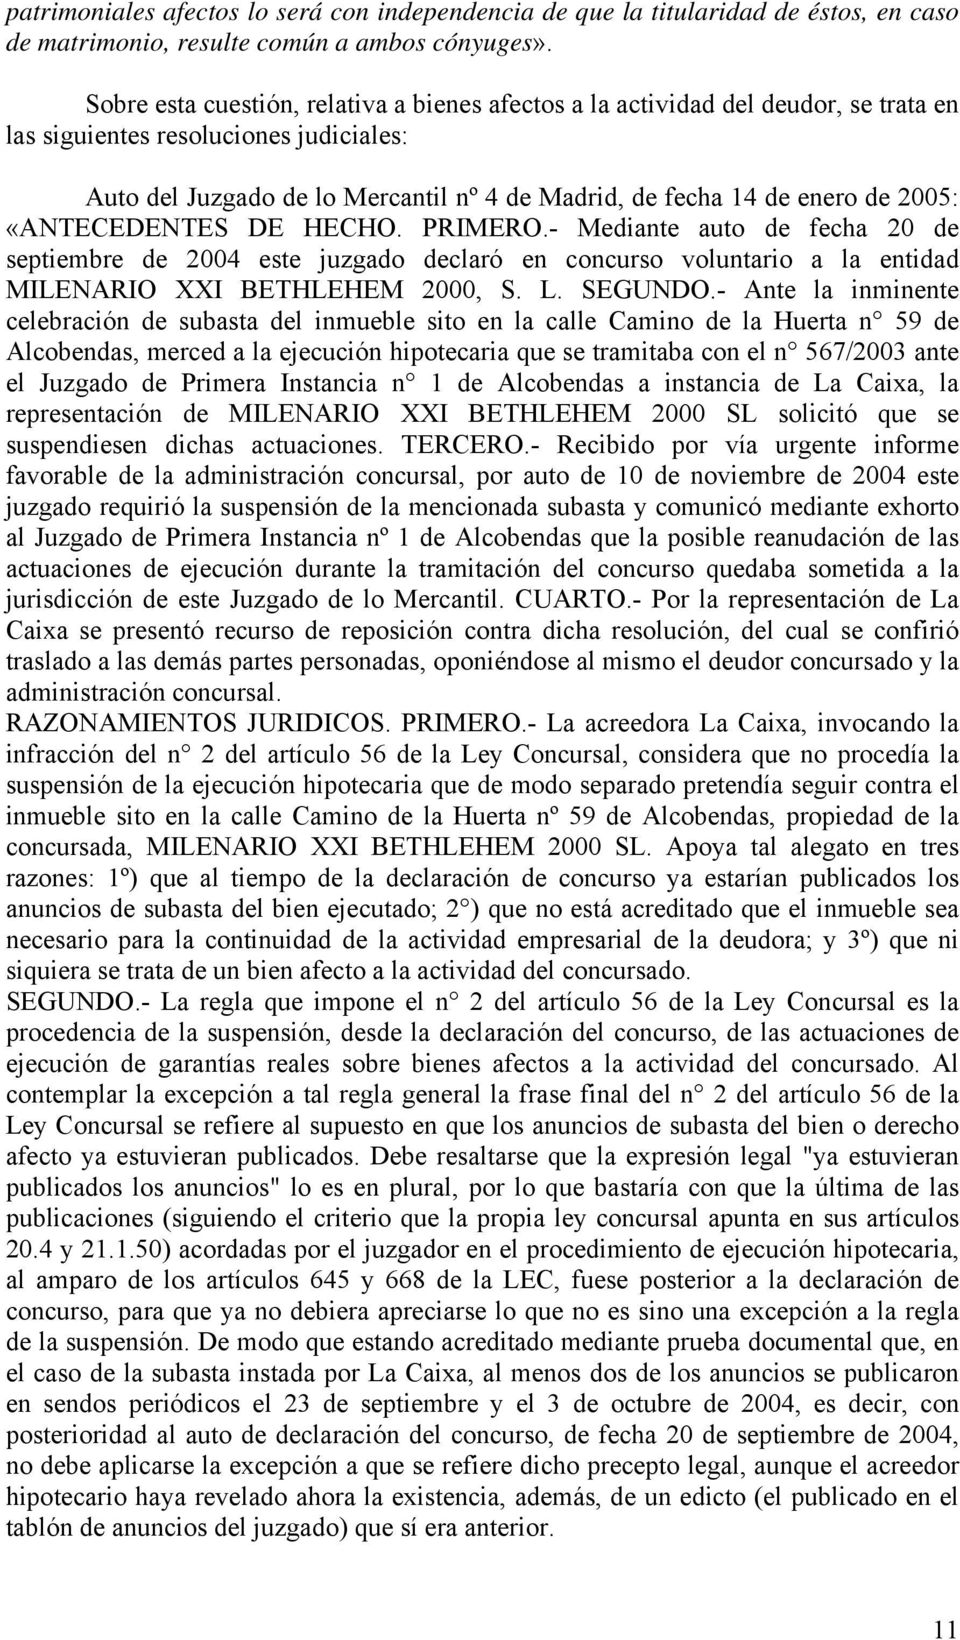 2005: «ANTECEDENTES DE HECHO. PRIMERO.- Mediante auto de fecha 20 de septiembre de 2004 este juzgado declaró en concurso voluntario a la entidad MILENARIO XXI BETHLEHEM 2000, S. L. SEGUNDO.